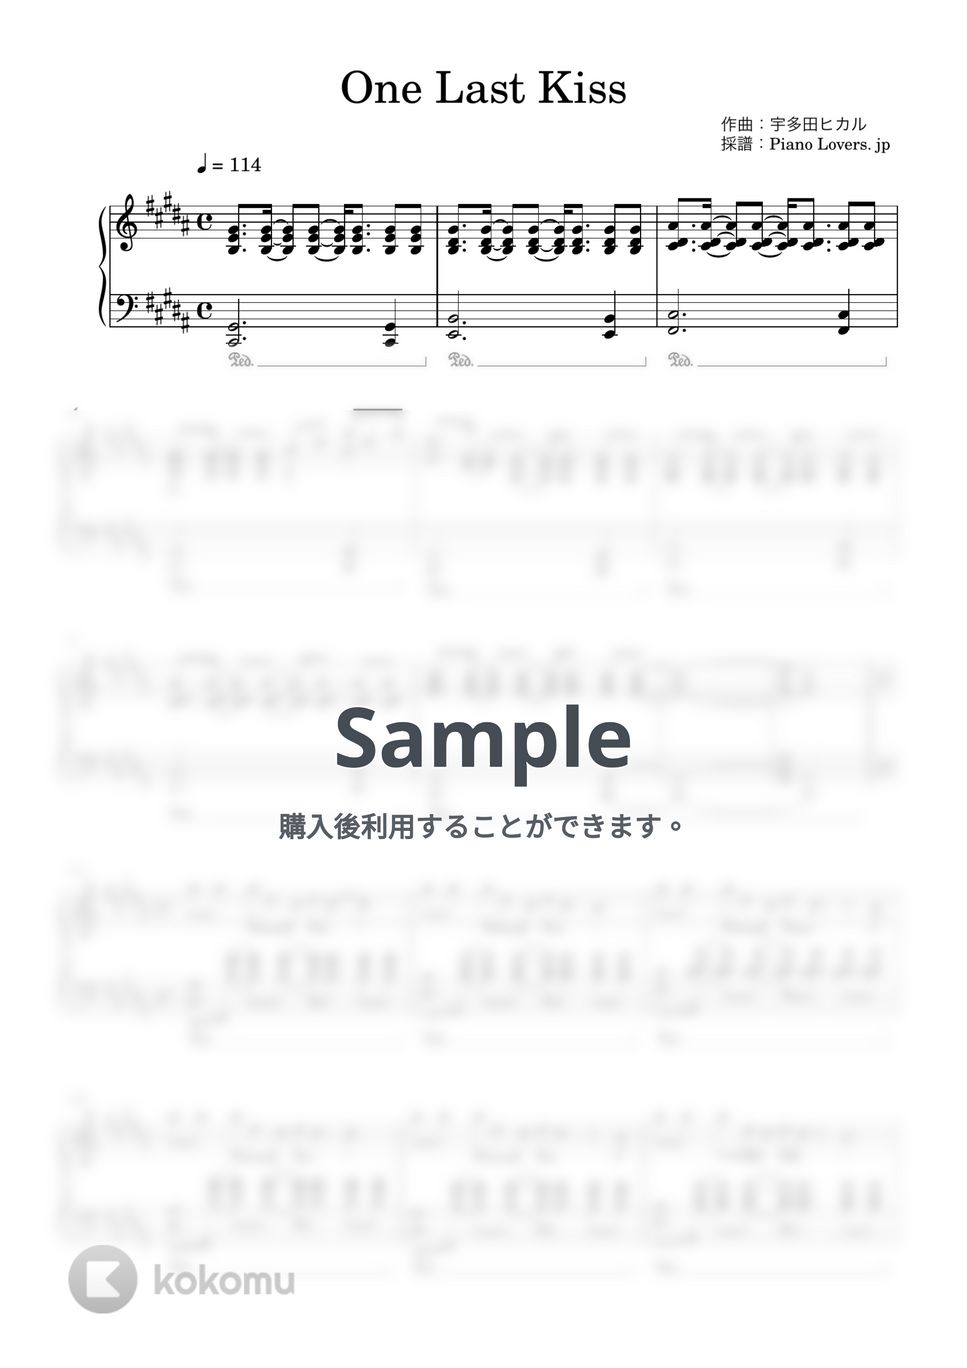 宇多田ヒカル - One Last Kiss (手の小さい方向け / シン・エヴァンゲリオン) by Piano Lovers. jp